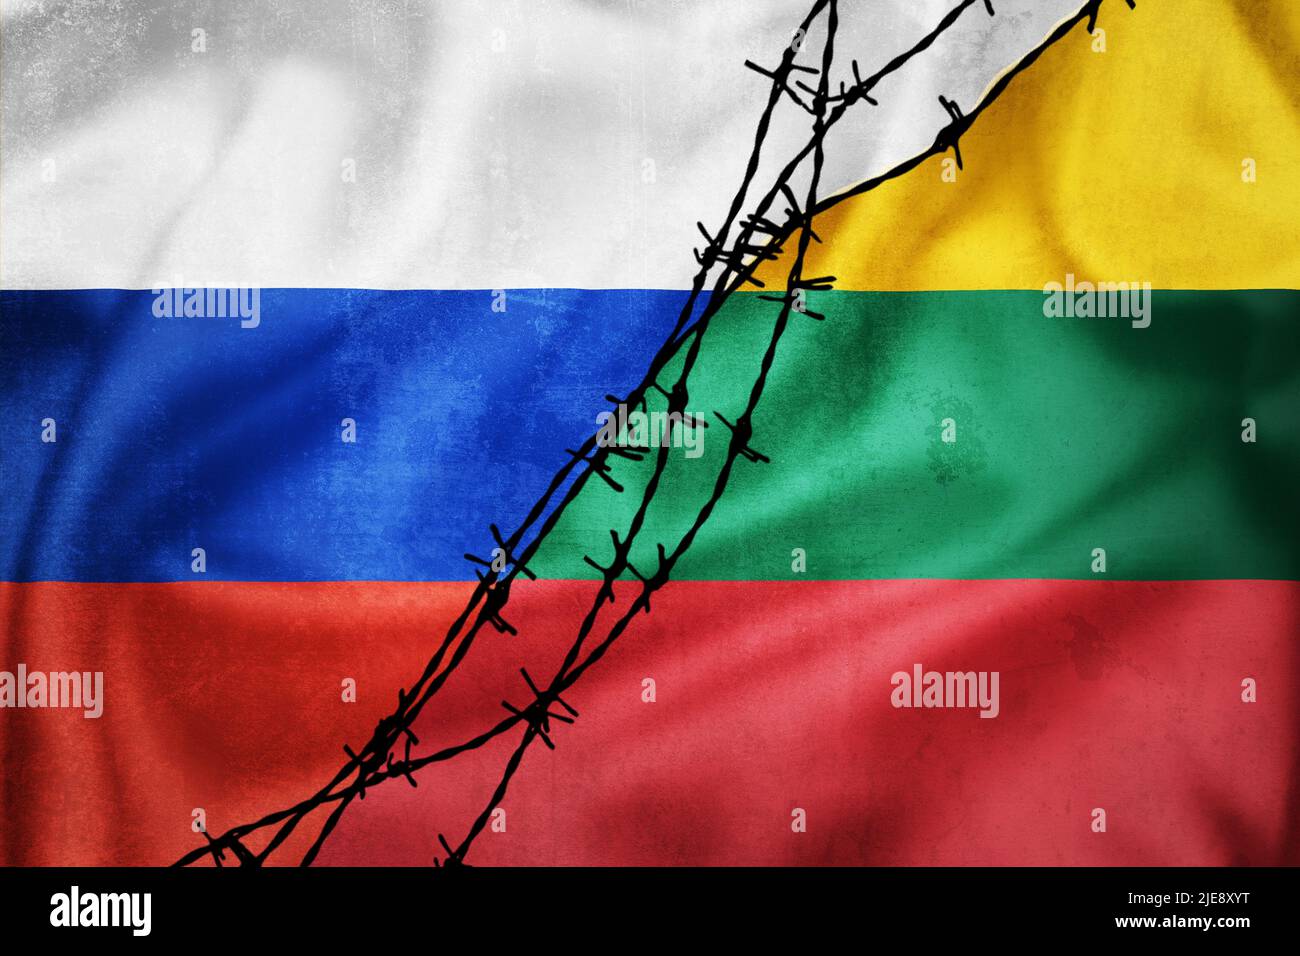 Bandiere grunge della Federazione Russa e della Lituania divise da un'illustrazione del filo di sbarbamento, concetto di relazioni tese tra l'ovest e la Russia Foto Stock